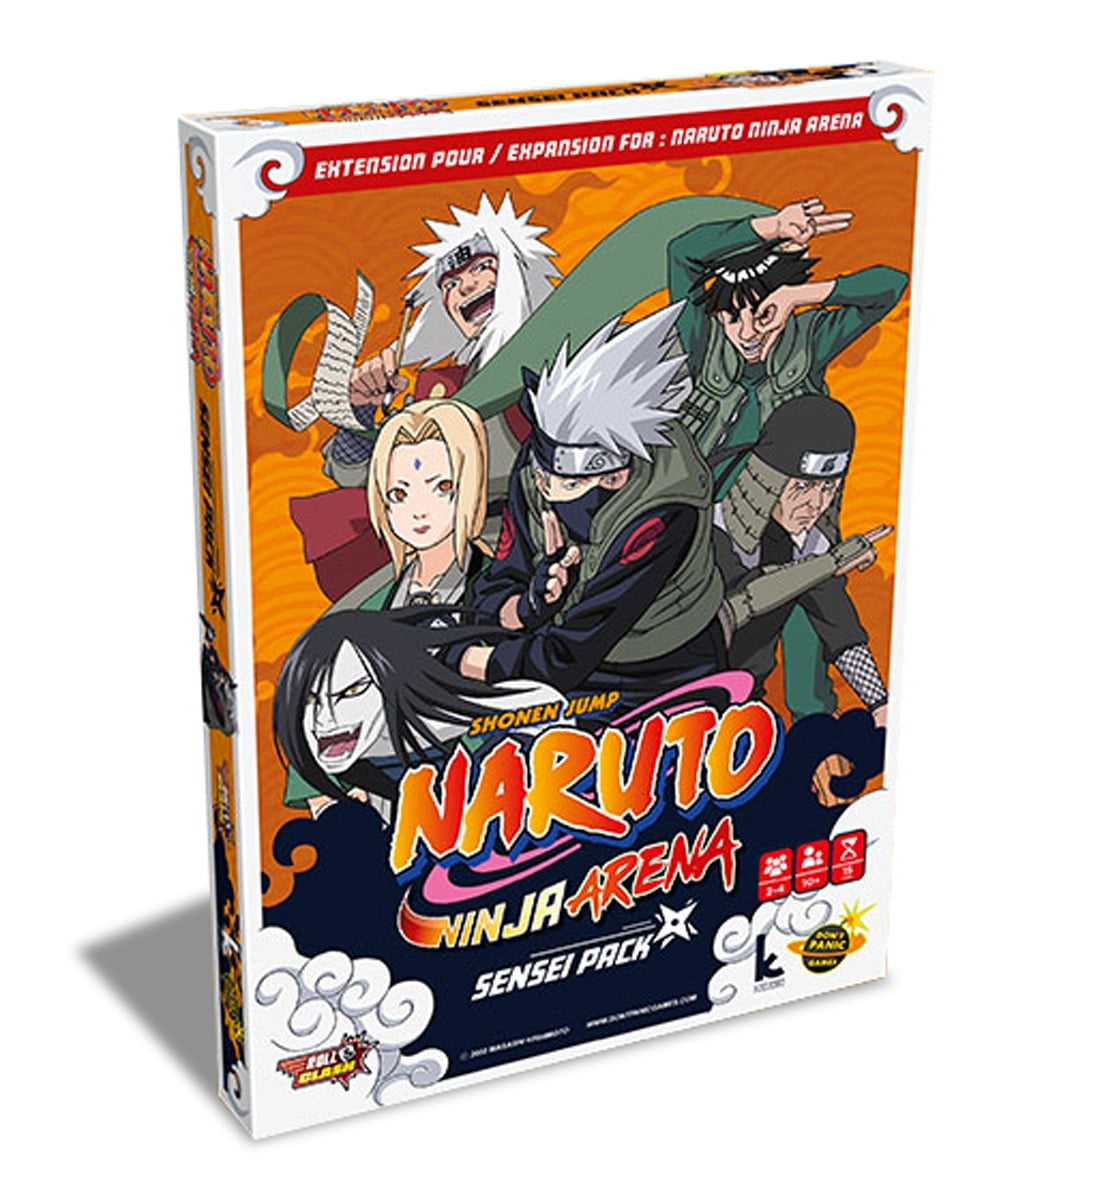 Đã bao giờ bạn tò mò về đấu trường của những ninja và pháp sư trong Naruto? Hãy cùng tham gia Naruto Ninja Arena Expansion Game để trải nghiệm những trận đấu nảy lửa và khám phá vô vàn bí mật của thế giới Naruto.